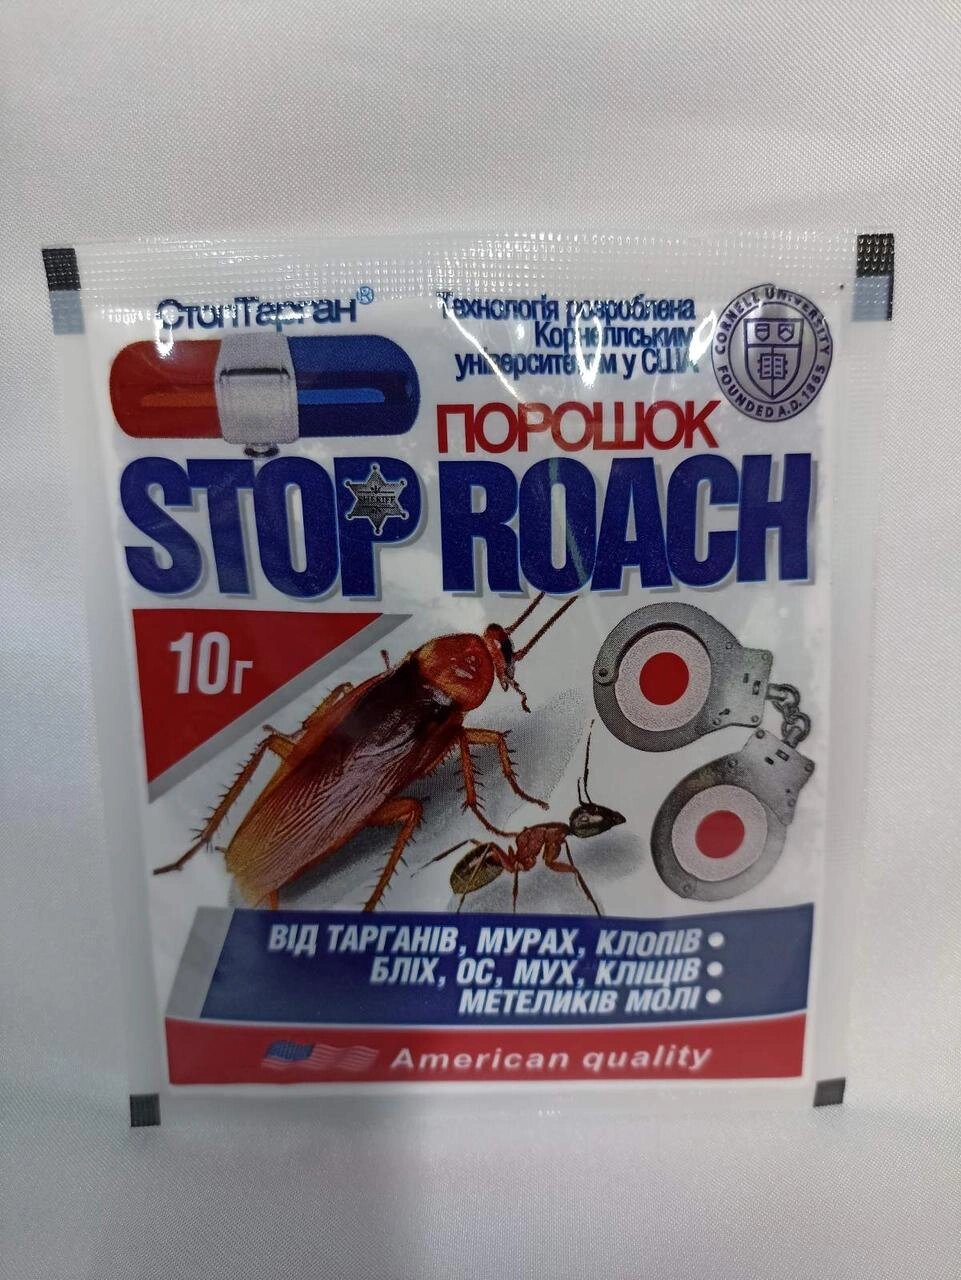 Високоефективний препарат від тарганів та інших комах, що повзають порошок Stop Roach 10 гр від компанії Універсальний Інтернет-магазин POPULAR - фото 1